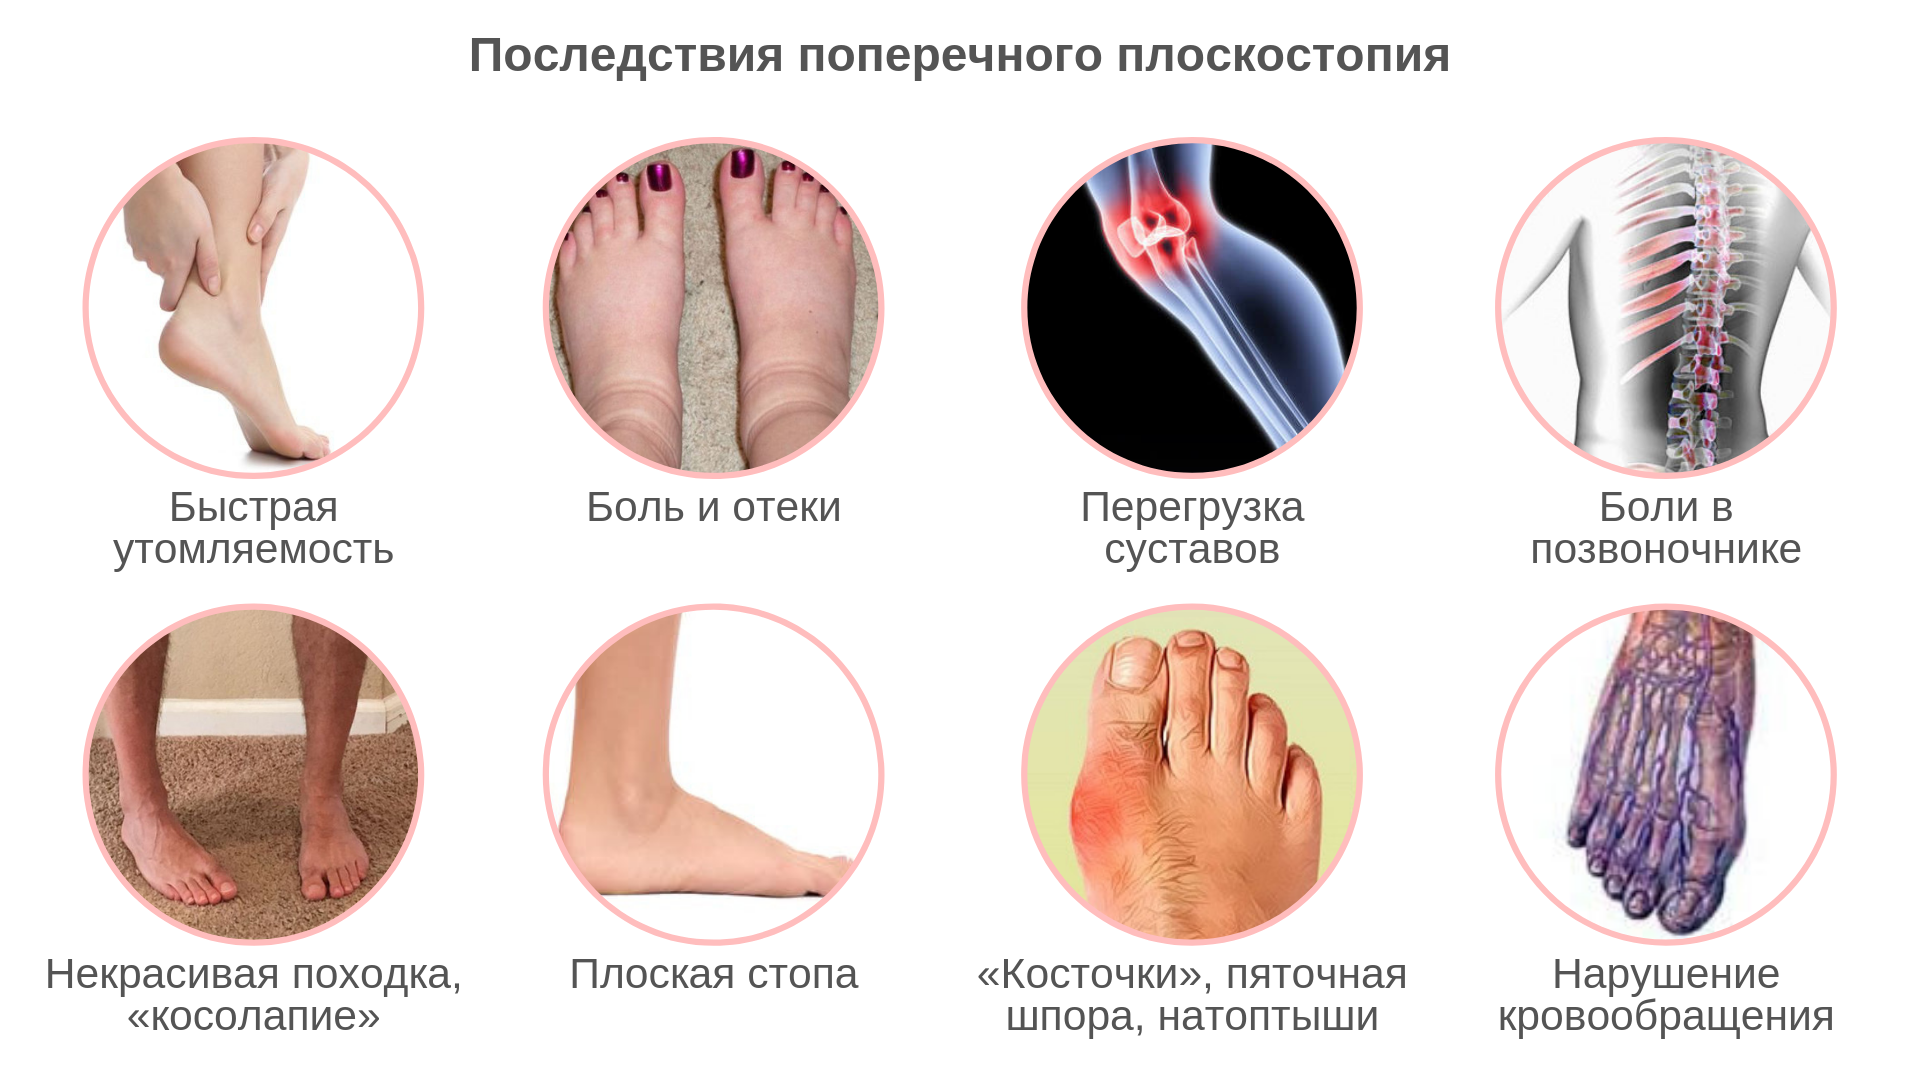 Весна и плоскостопие, или почему в межсезонье болят ноги? | Новости Новороссийска